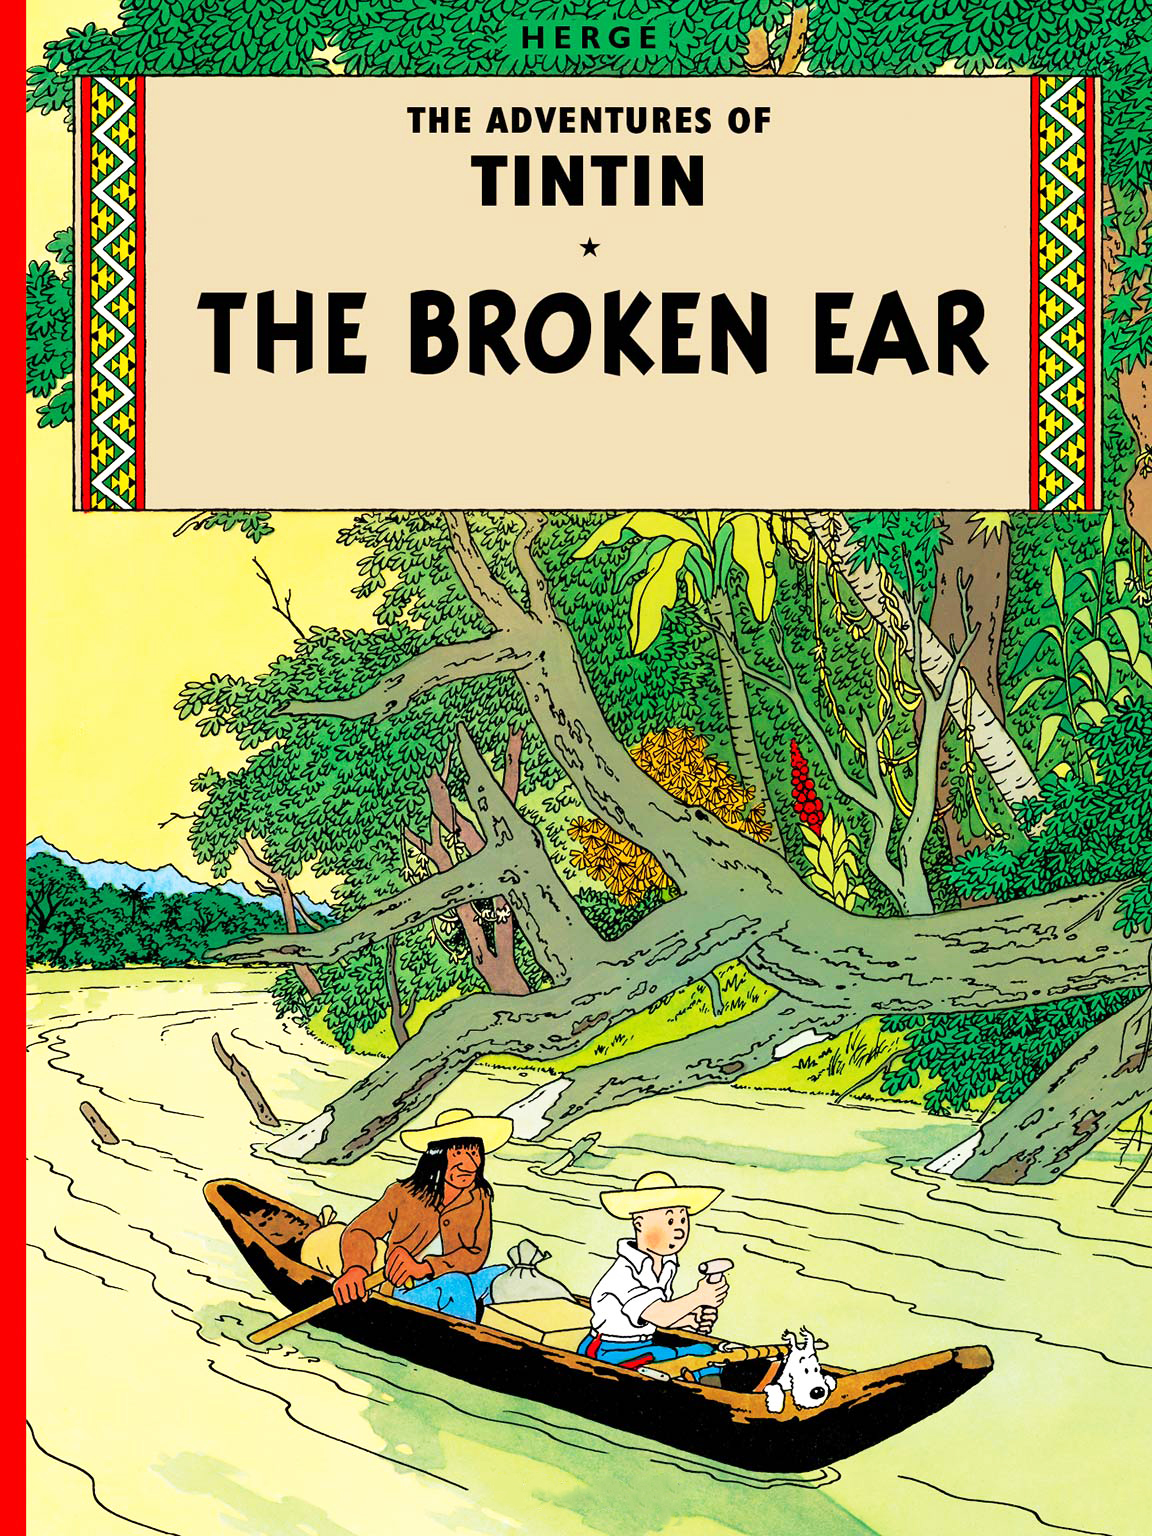 TINTIN: The Broken Ear (পেপারব্যাক)